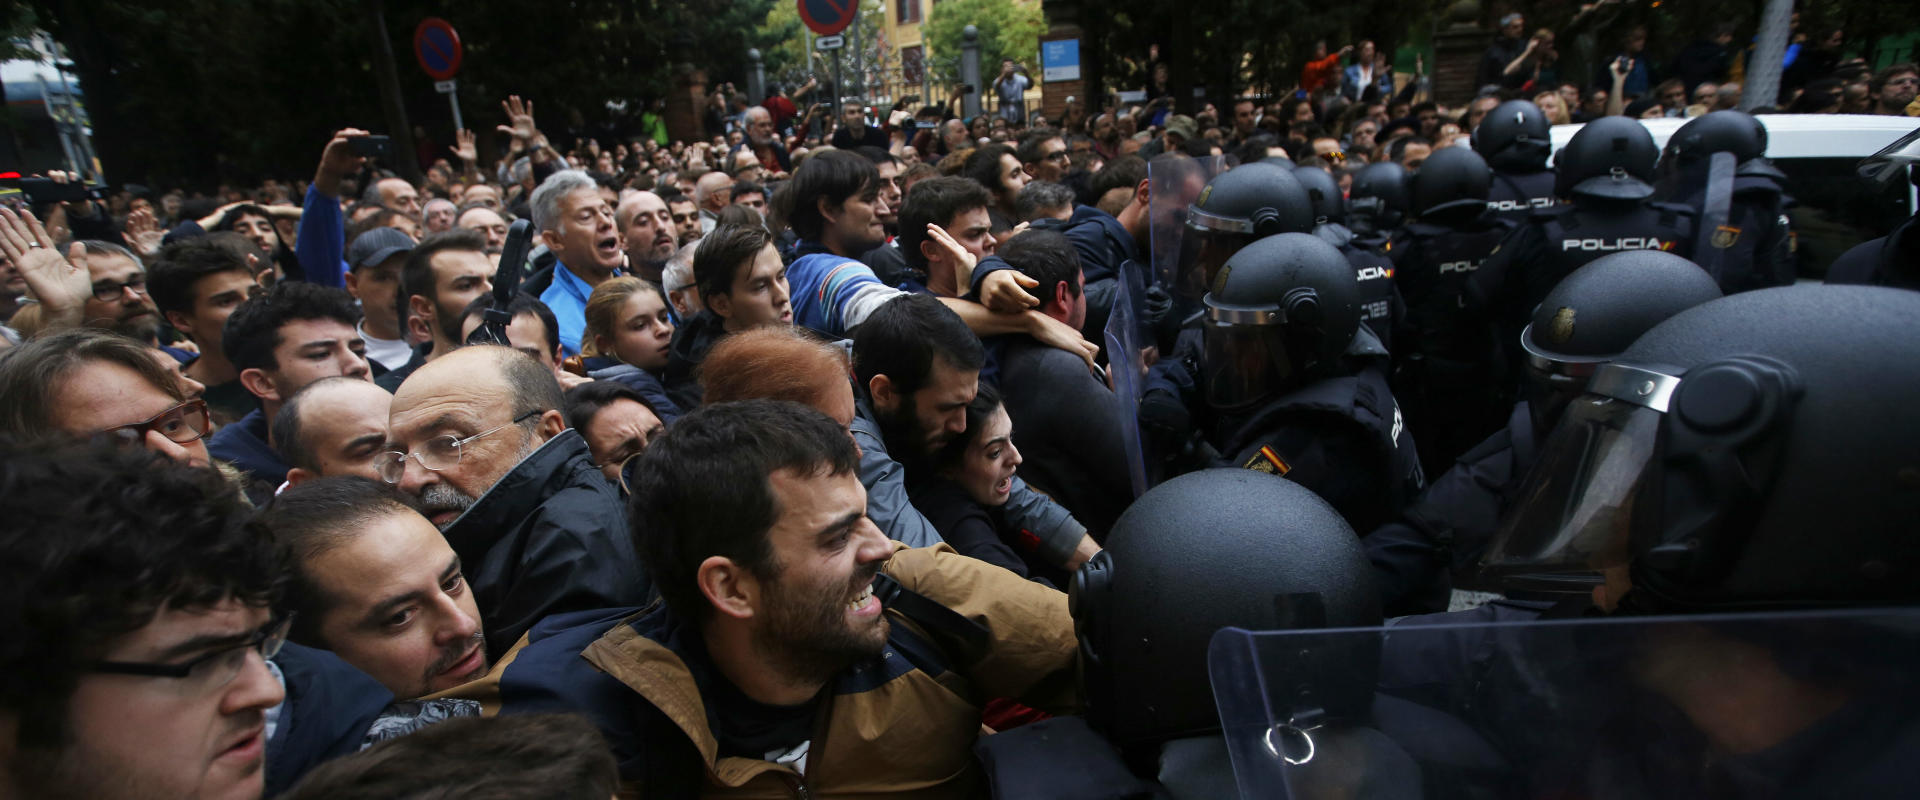 שוטרים מתעמתים עם תושבים בברצלונה, הבוקר